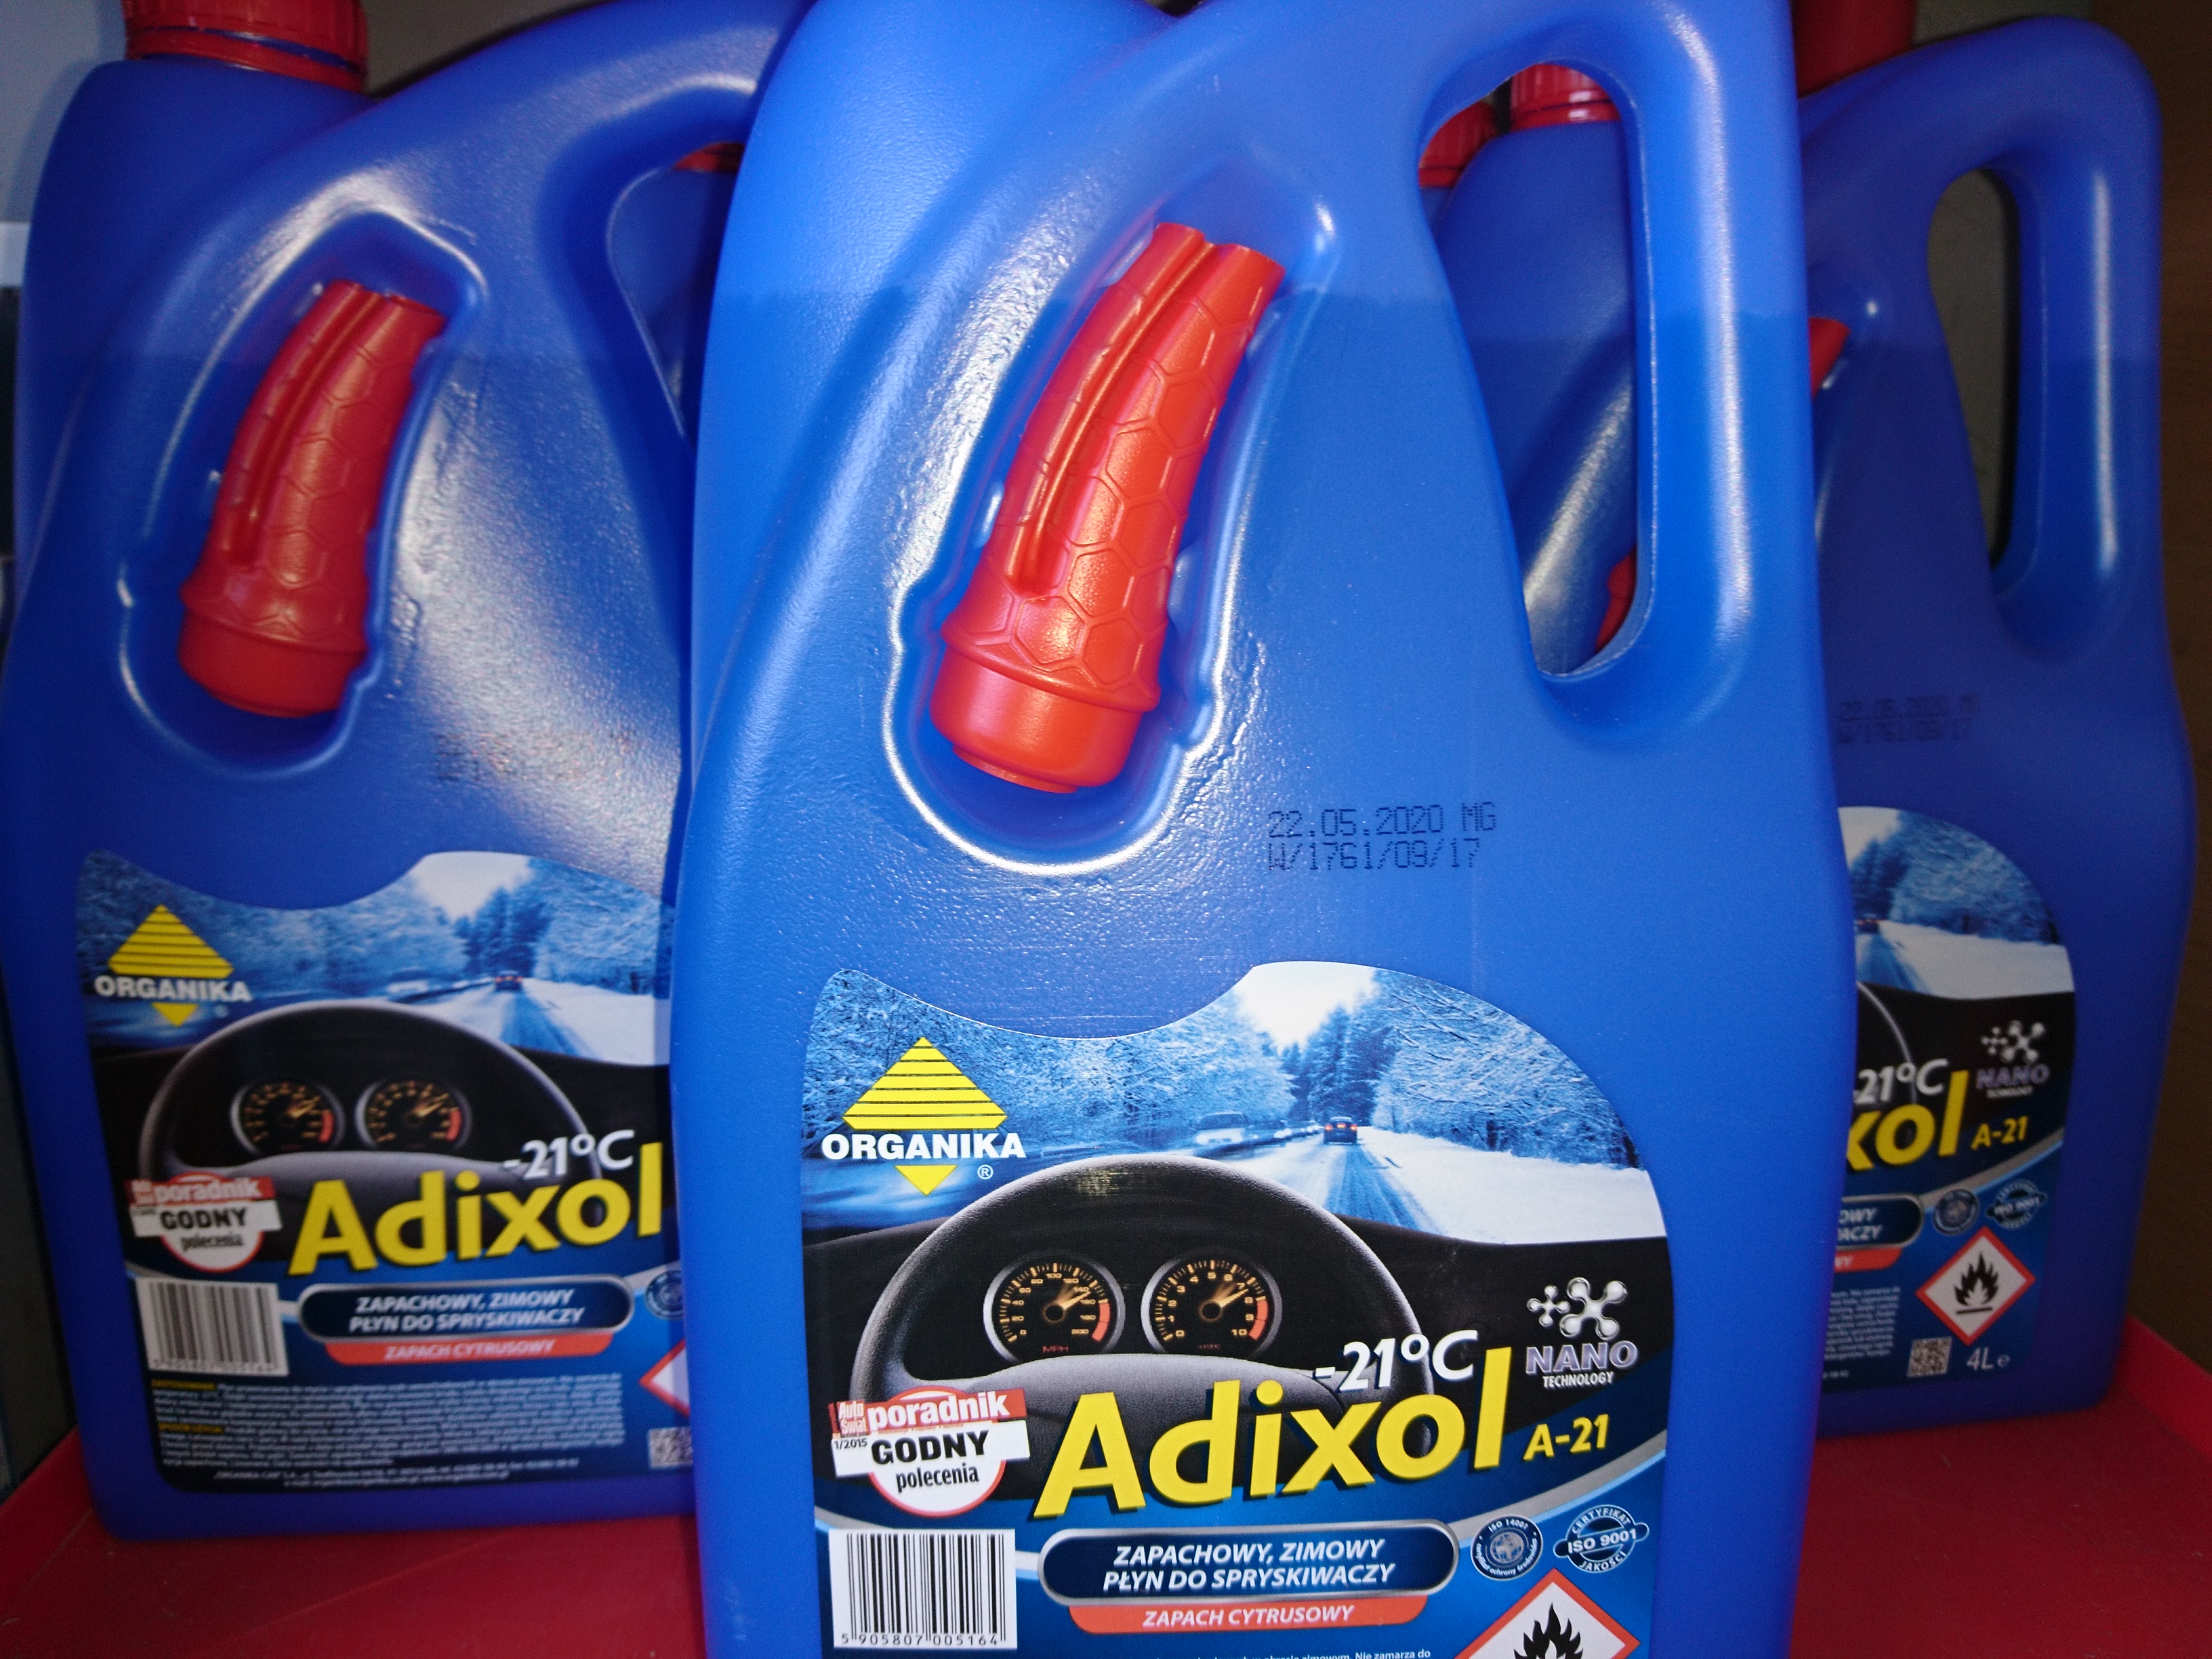 Zimowy płyn do spryskiwaczy ADIXOL -21